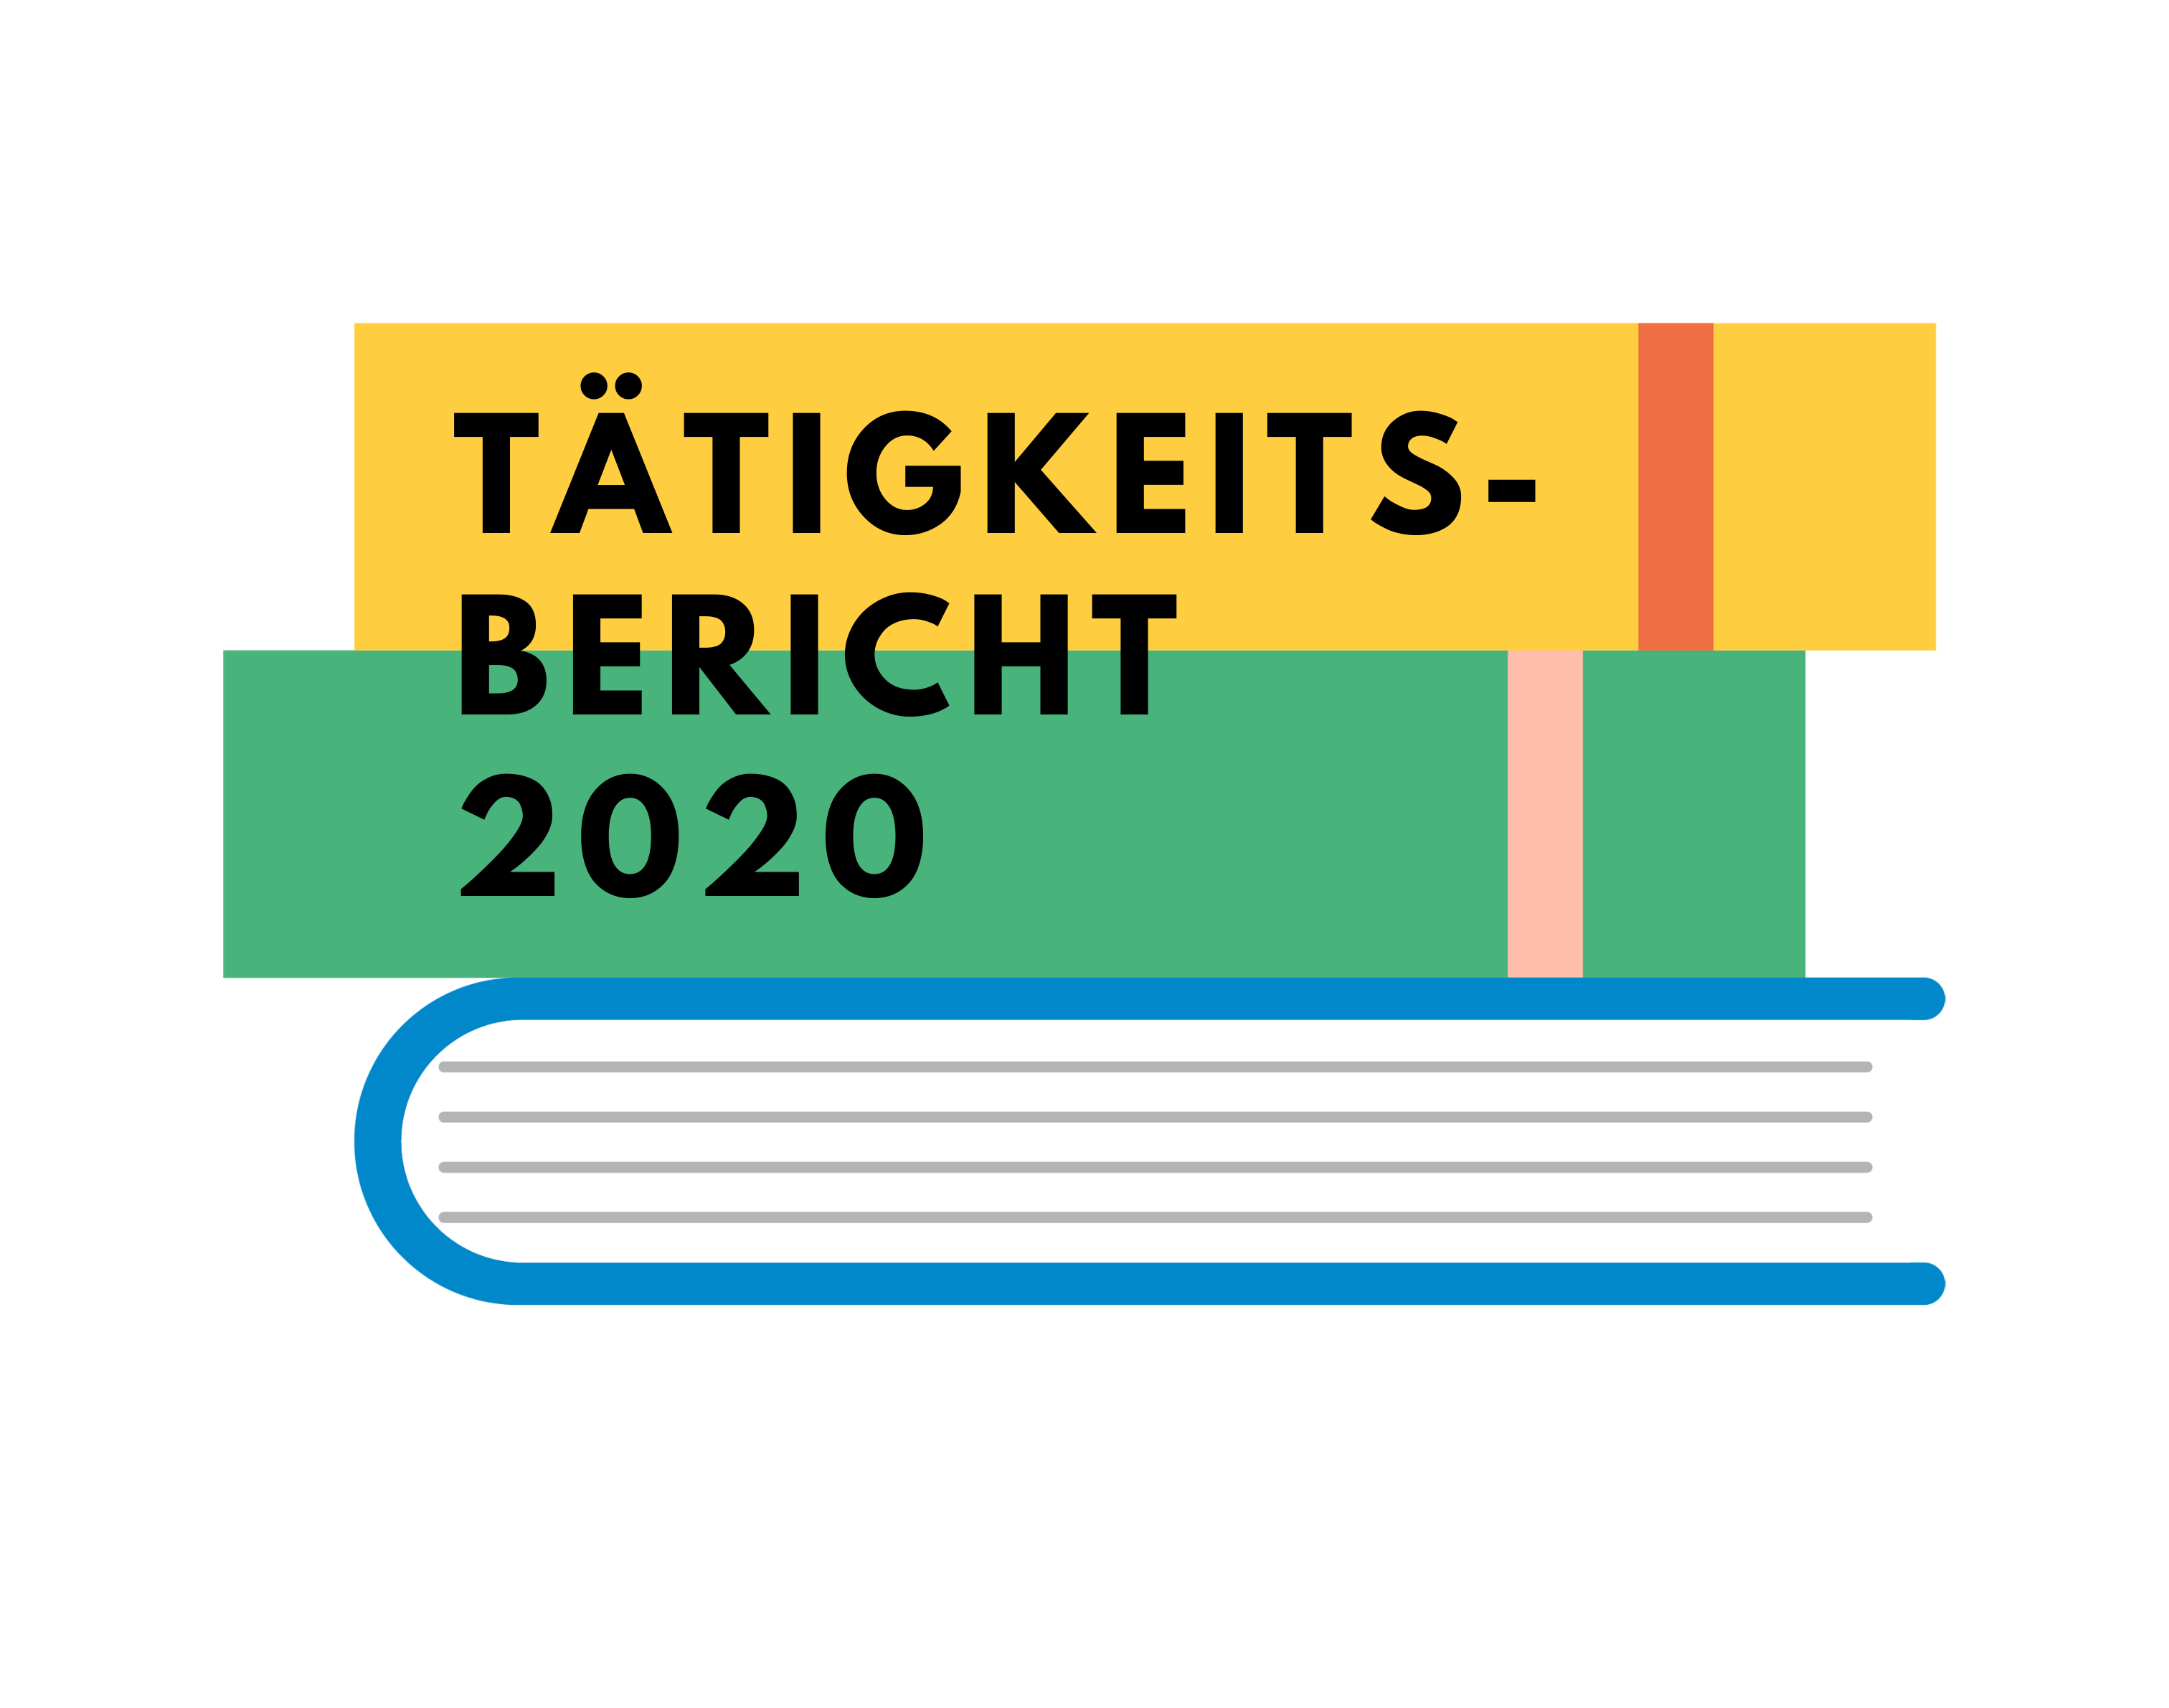 Dekorative Grafik: Bunter Bücherstapel mit der großen schwarzen Überschrift "Tätigkeitsbericht 2020"